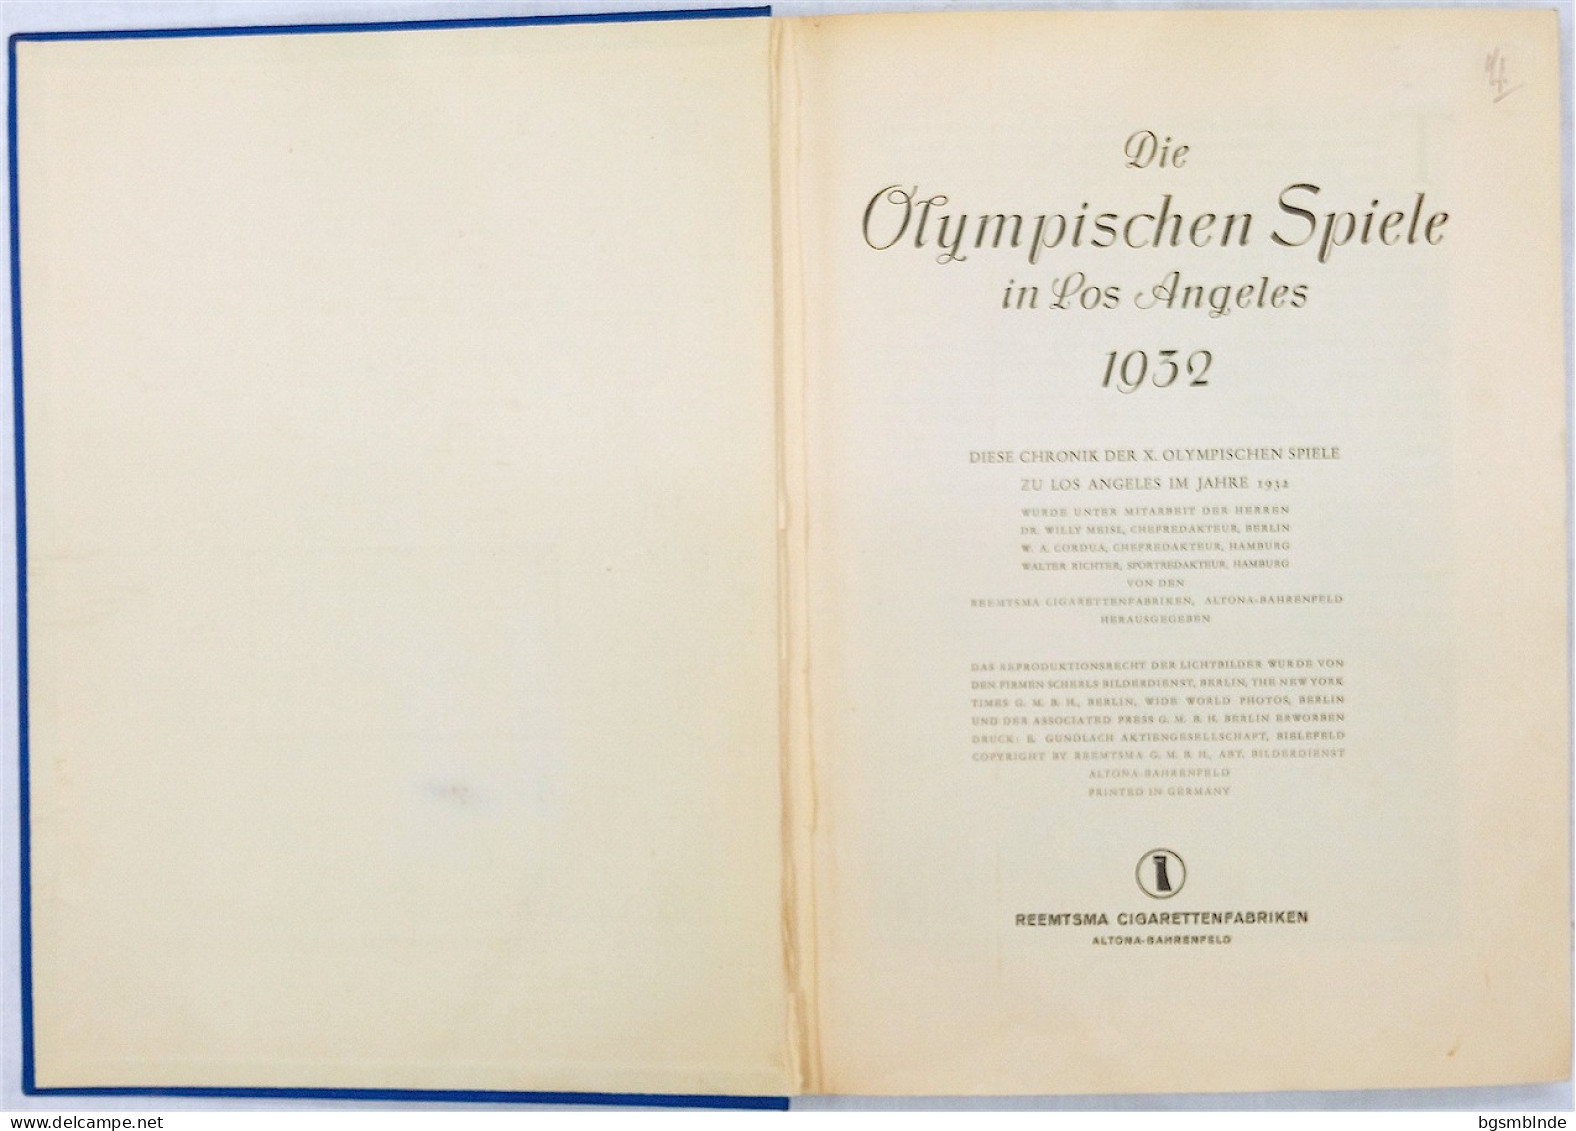 Die Olympischen Spiele 1932 In Los Angeles - Sammel-Bildband Komplett / 142 S. - 24,5x32x2,6cm - Deportes